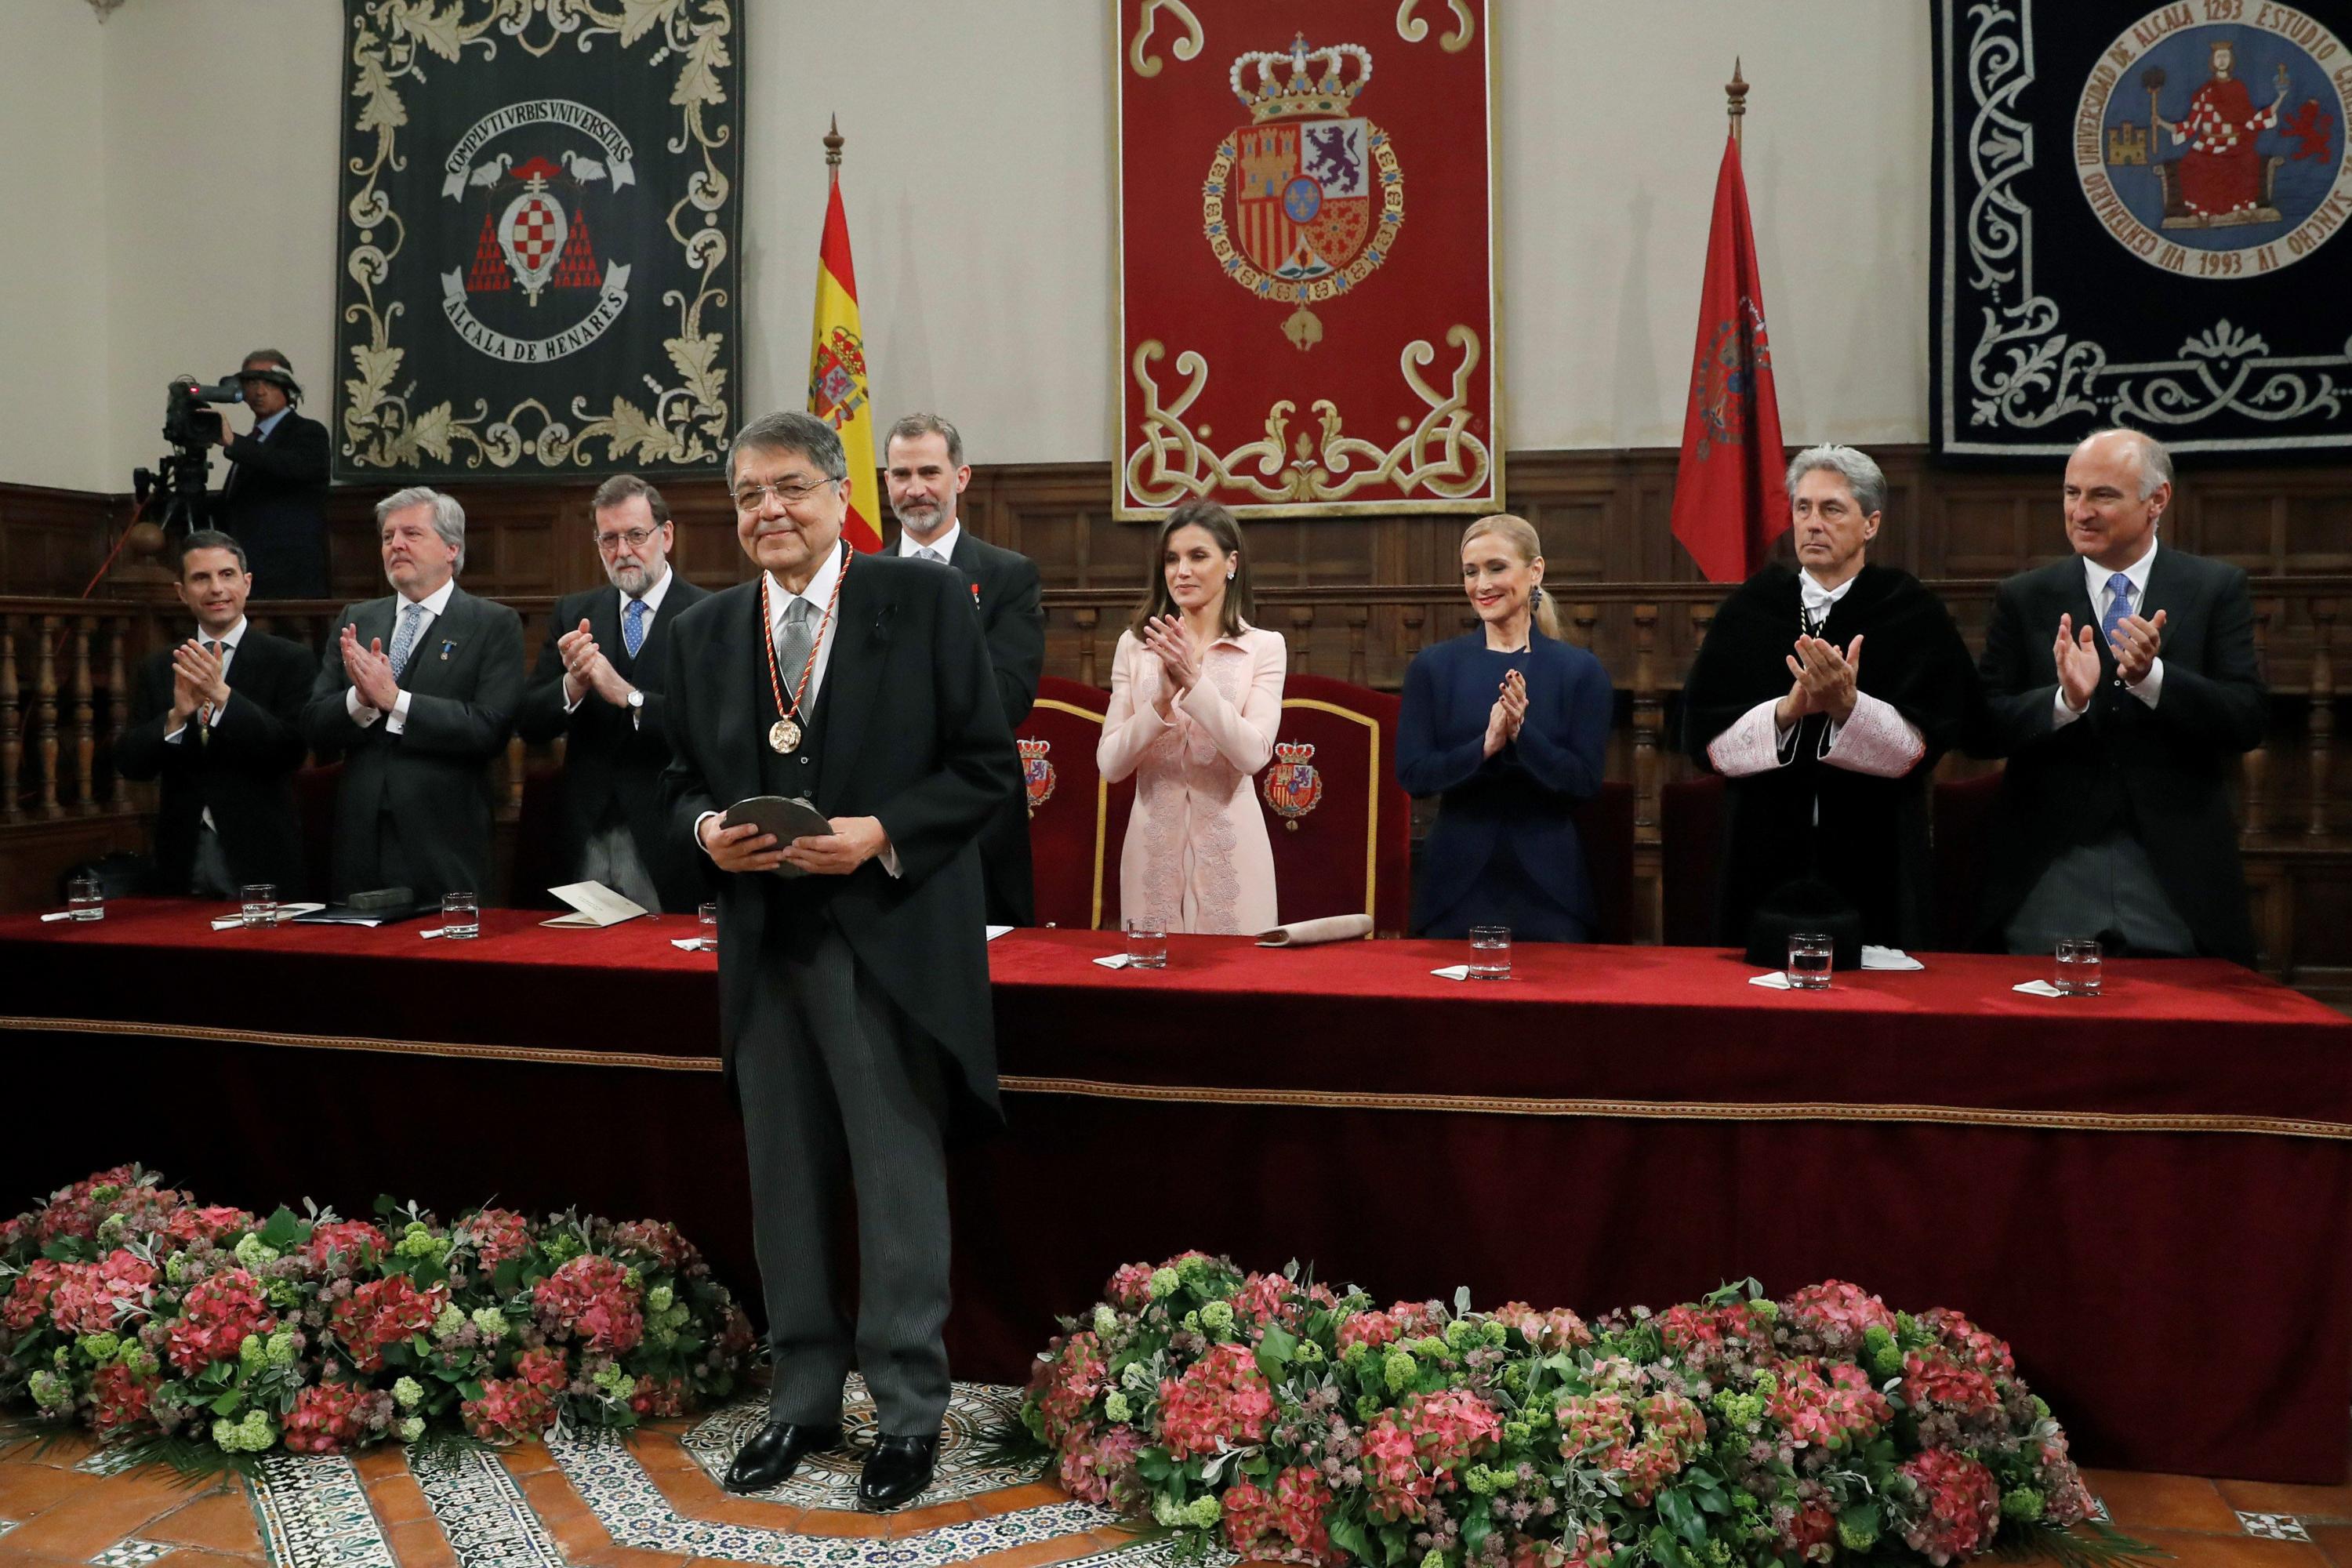 El escritor Sergio Ramírez posa con el premio en la ceremonia presidida por los reyes de España, en la Universidad Alcalá de Henares. AFP PHOTO |Juan Carlos Hidalgo